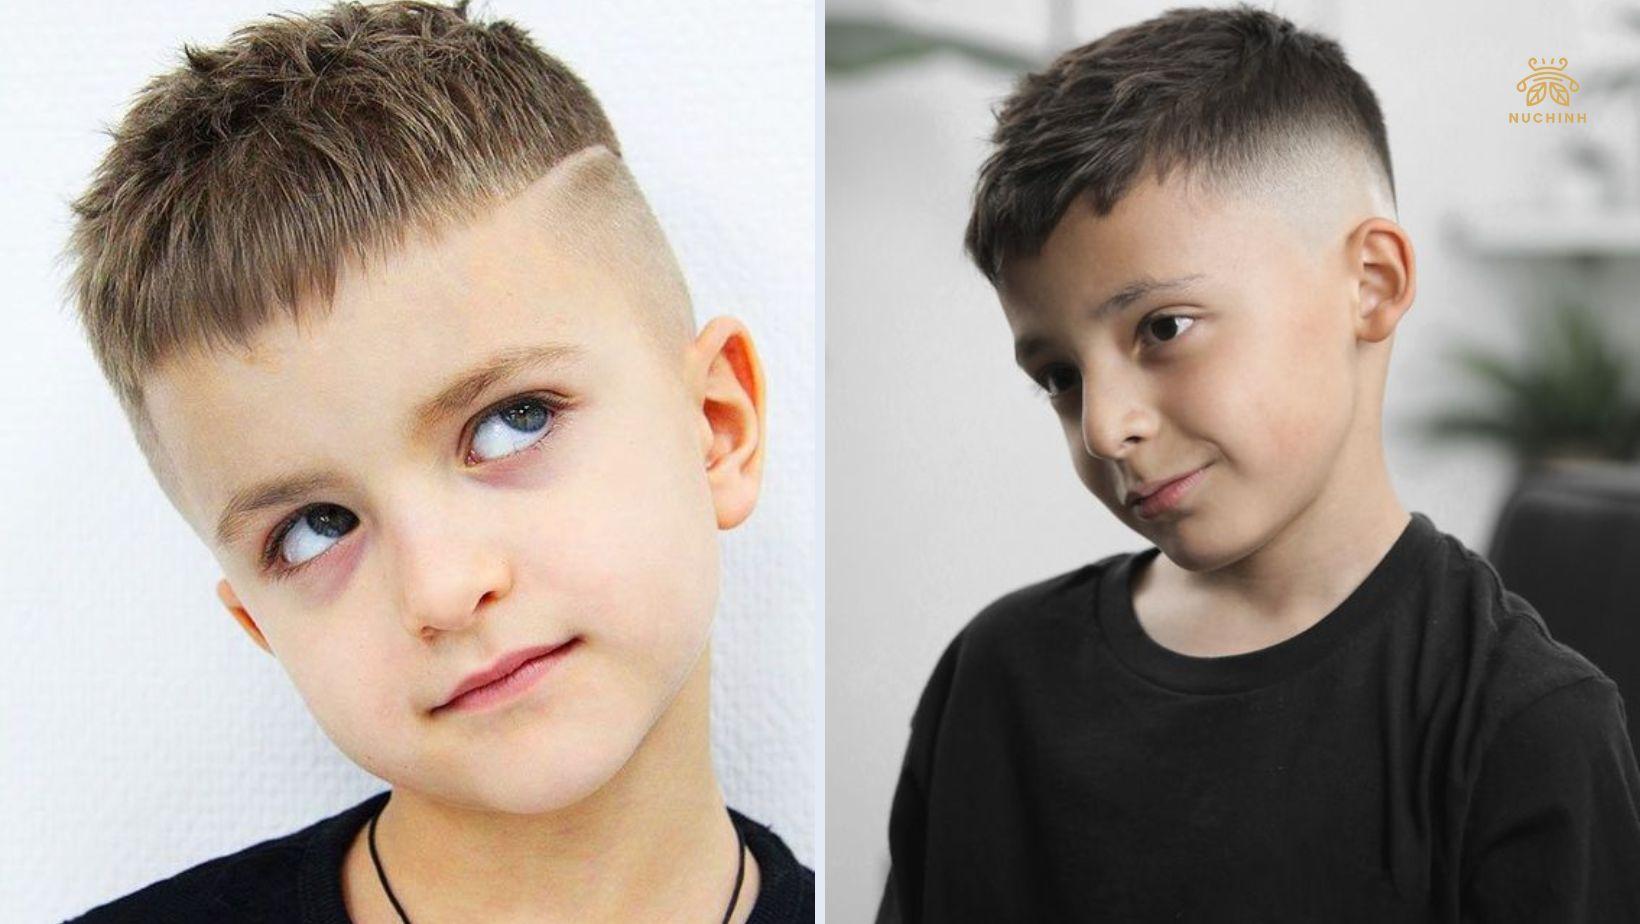 Kiểu tóc ngắn Burr Cut cho trẻ con cực chất tại TƯỜNG BARBER  YouTube